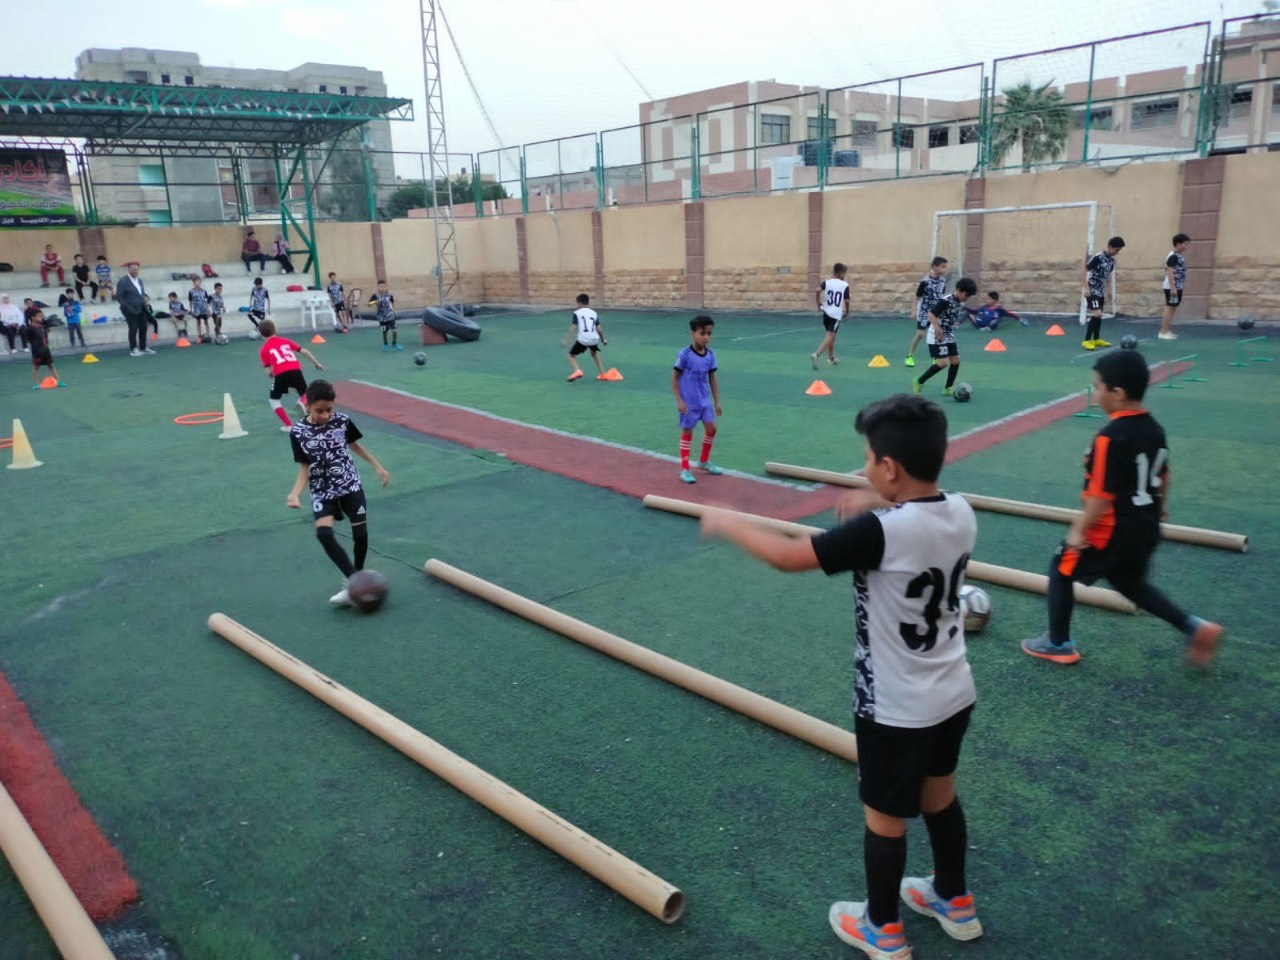 فعاليات وأنشطة رياضية  بشمال سيناء لتطوير الأكاديميات الرياضية (4)